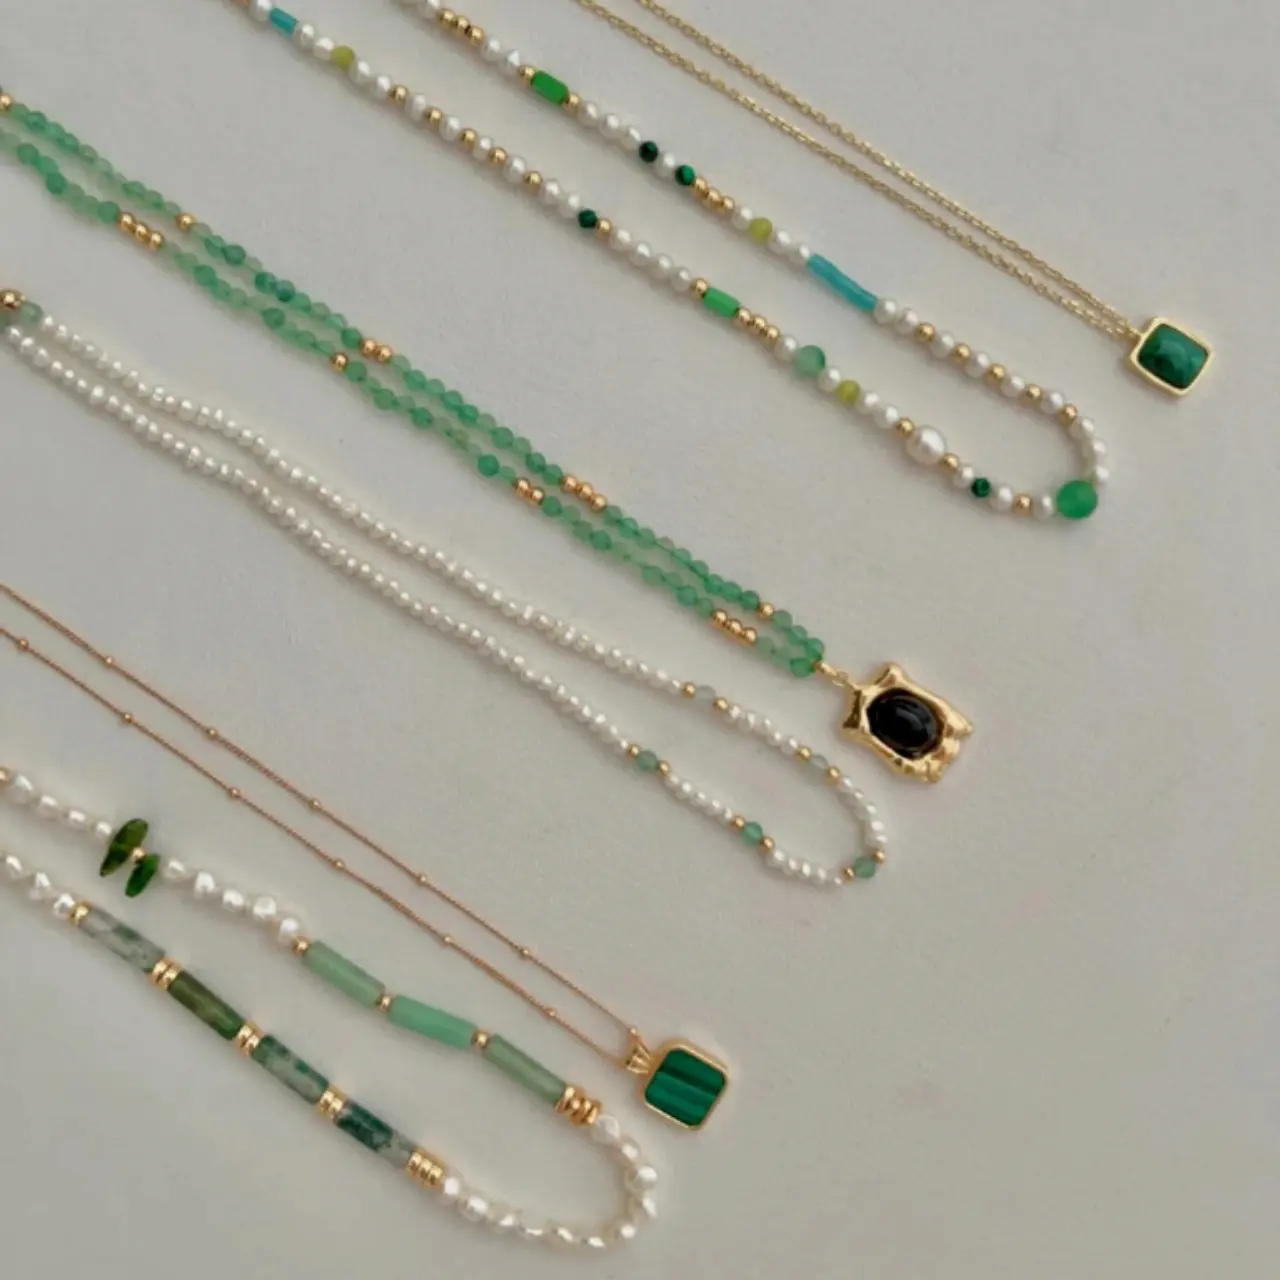 Neue Mode Perlen Perlenkette zarten grünen Malachit Anhänger für Frauen Schmuck